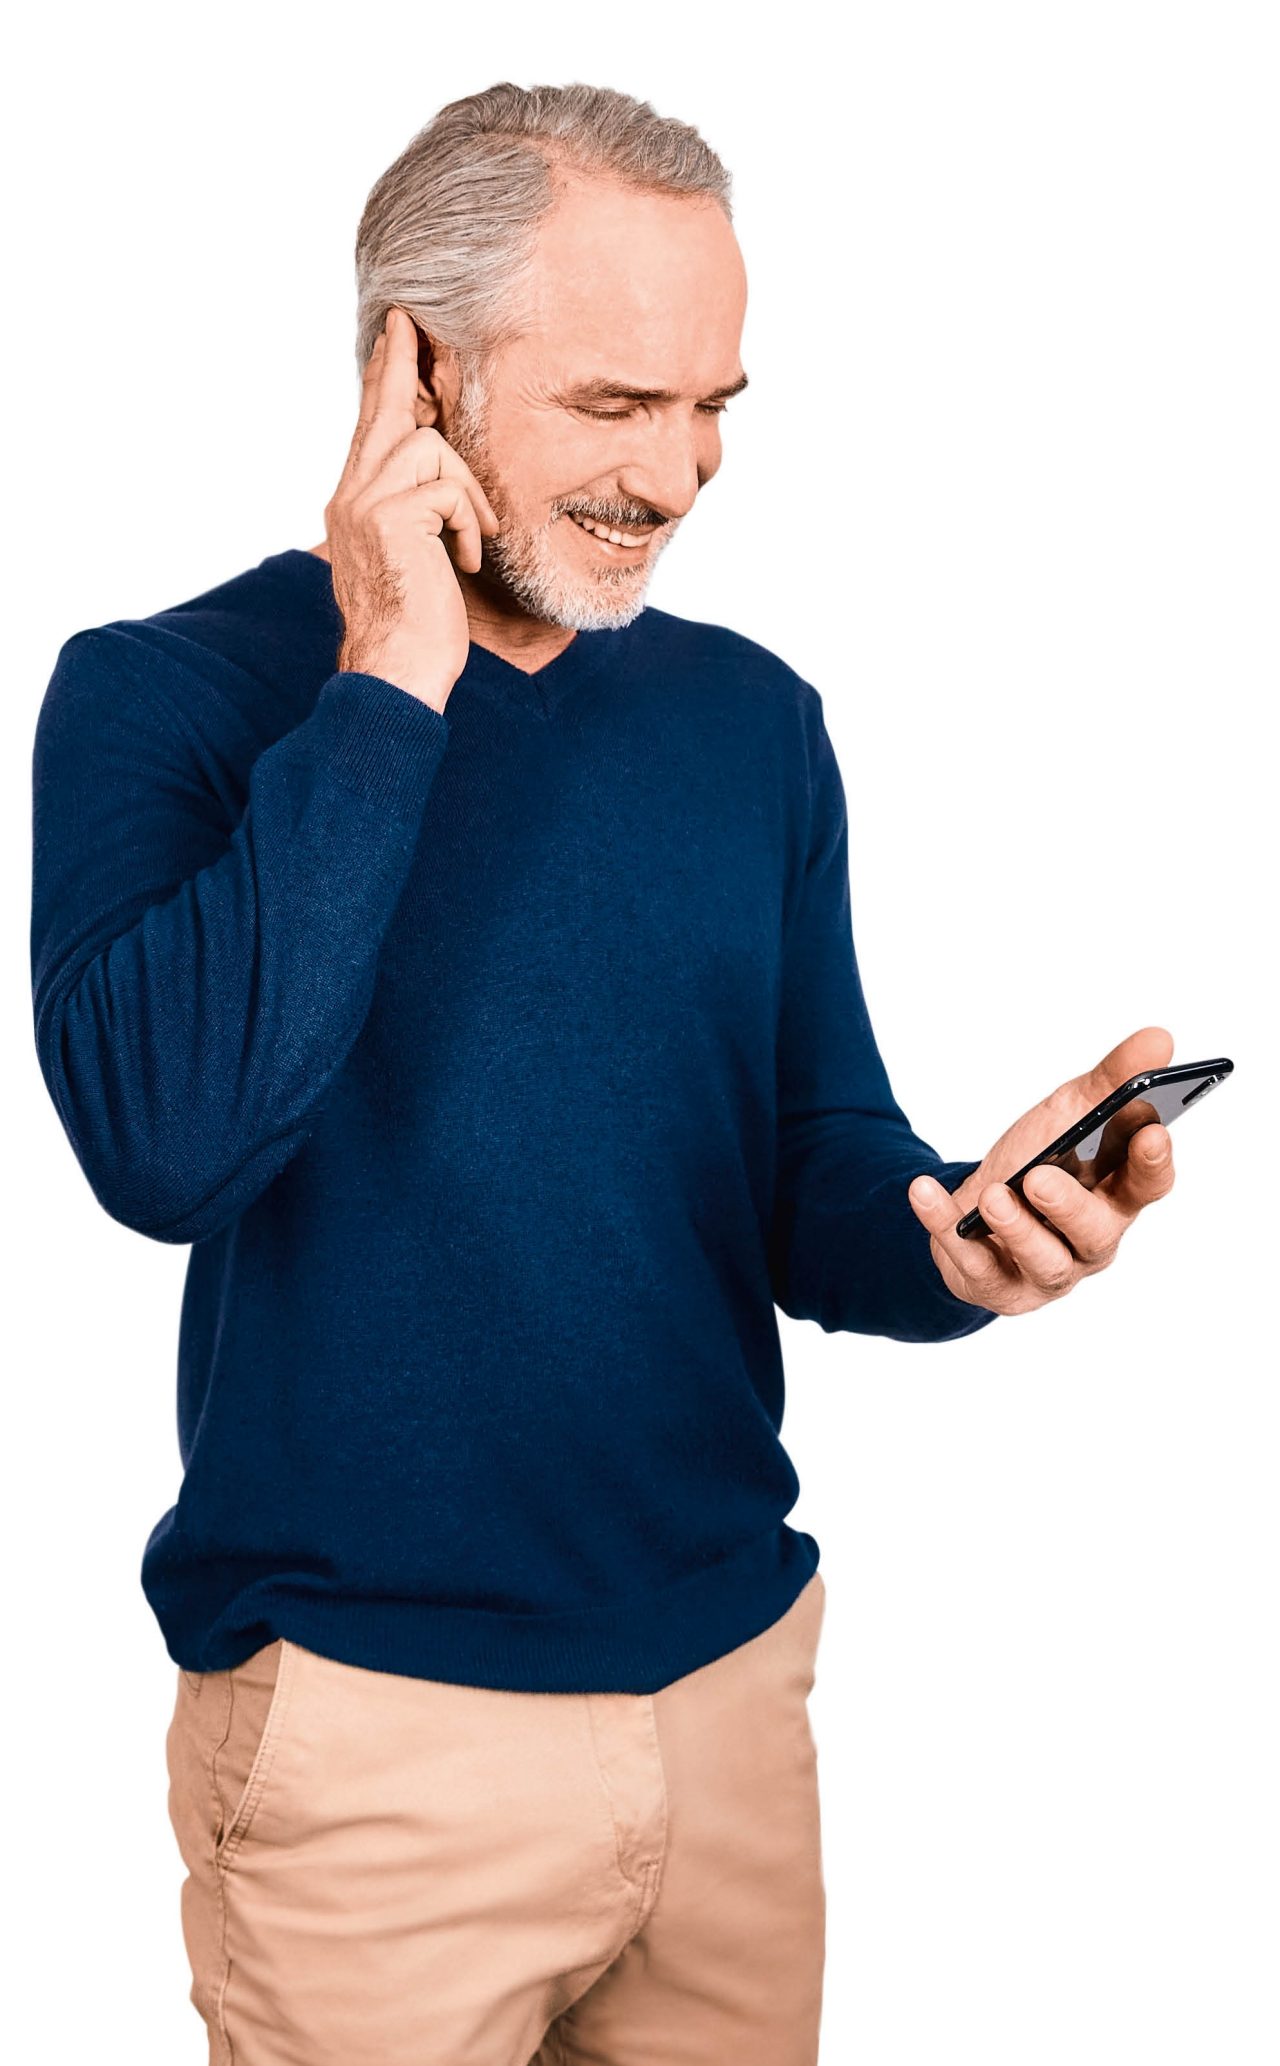 Une personne qui répond à un appel téléphonique mains libres en tapant deux fois sur l’oreille avec le contrôle tactile